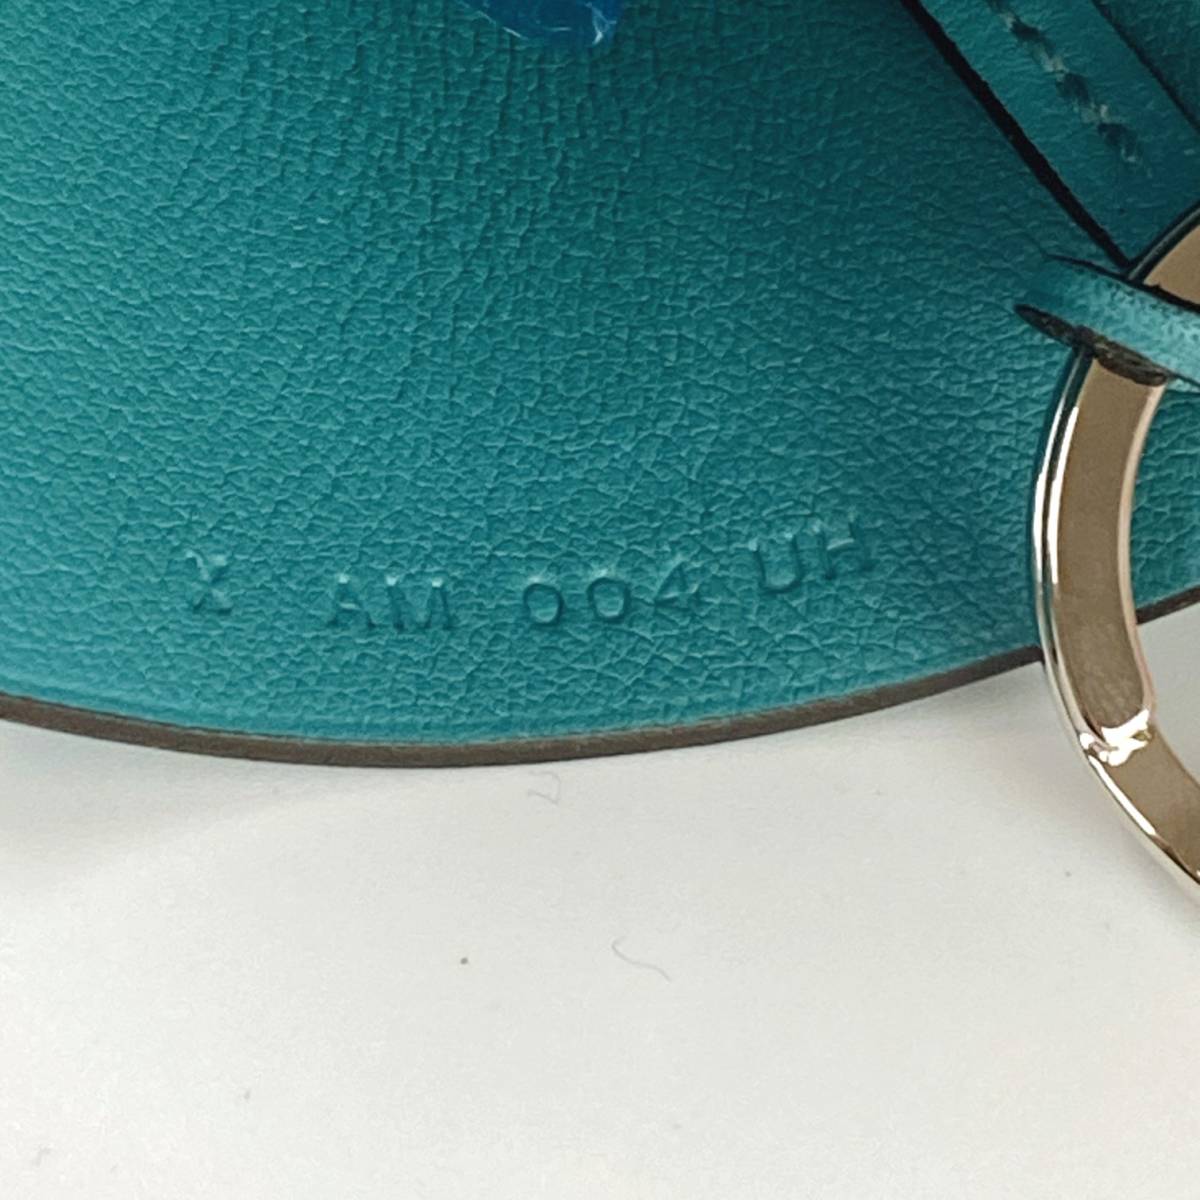  прекрасный товар HERMESbok шарф cloche to ключ покрытие кольцо для ключей X печать зеленый / оттенок голубого Hermes колье женский мужской .MZ